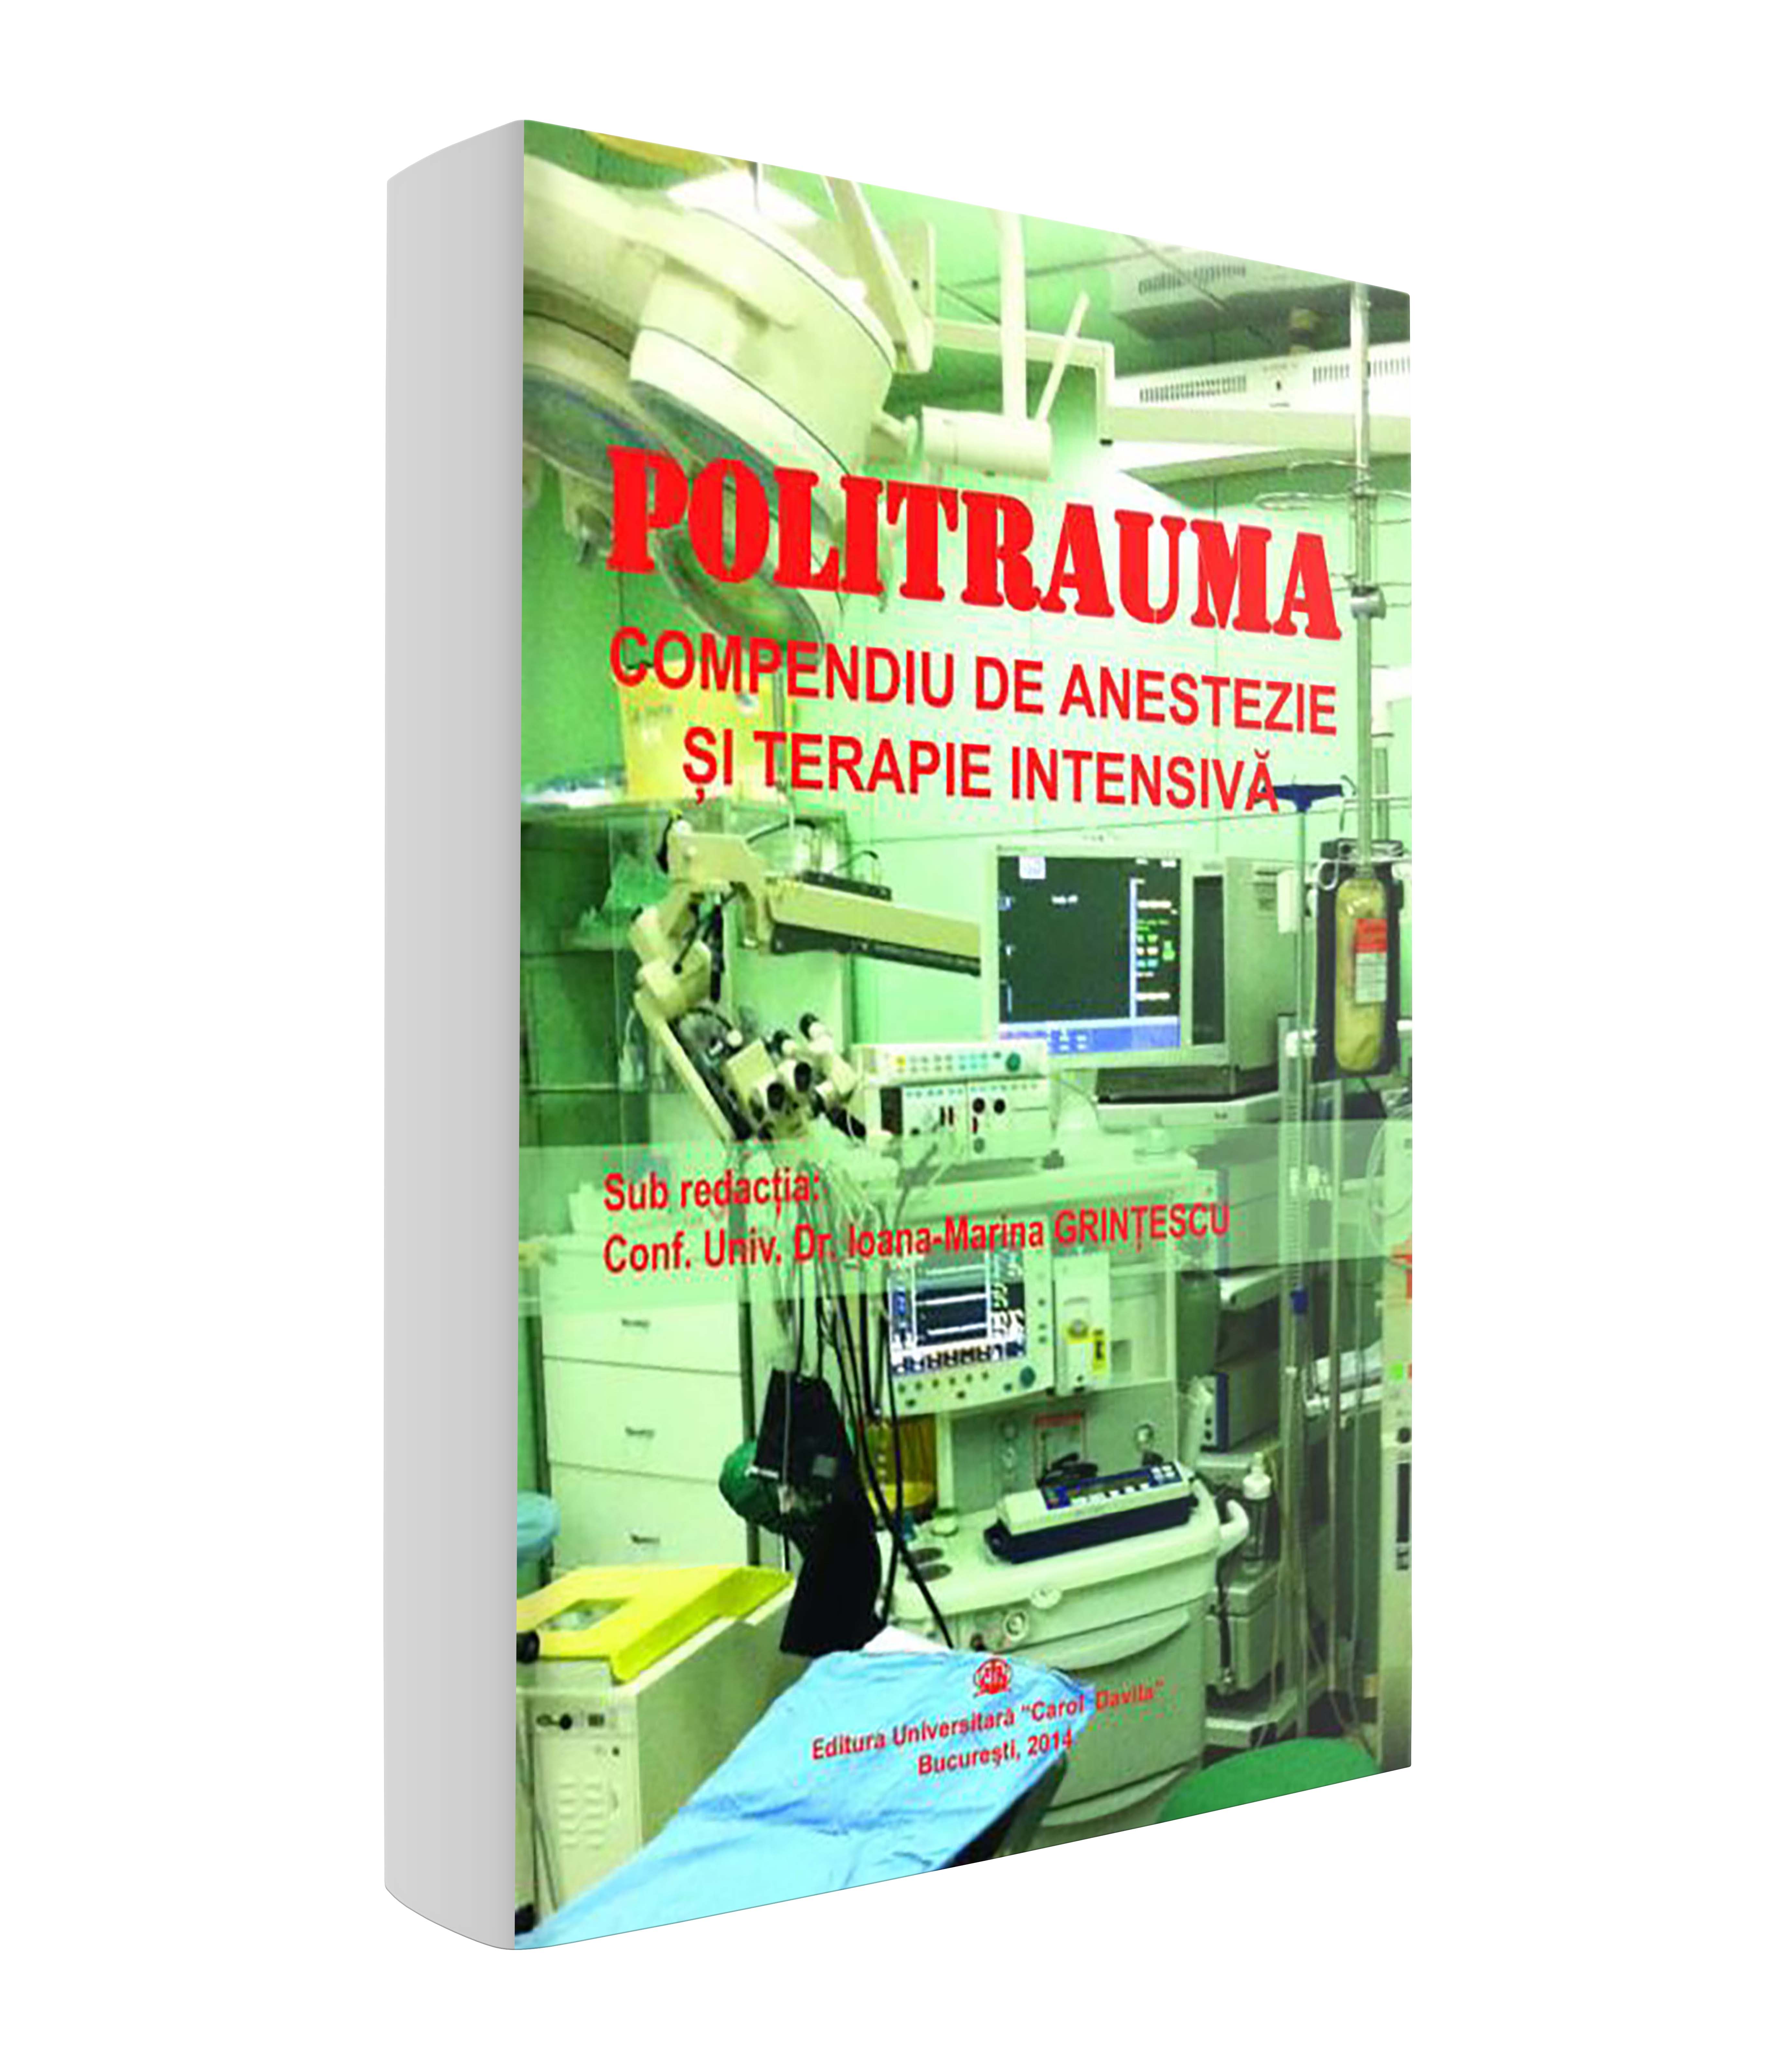 <p>Politrauma – Compendiu de anestezie şi terapie intensivă</p>